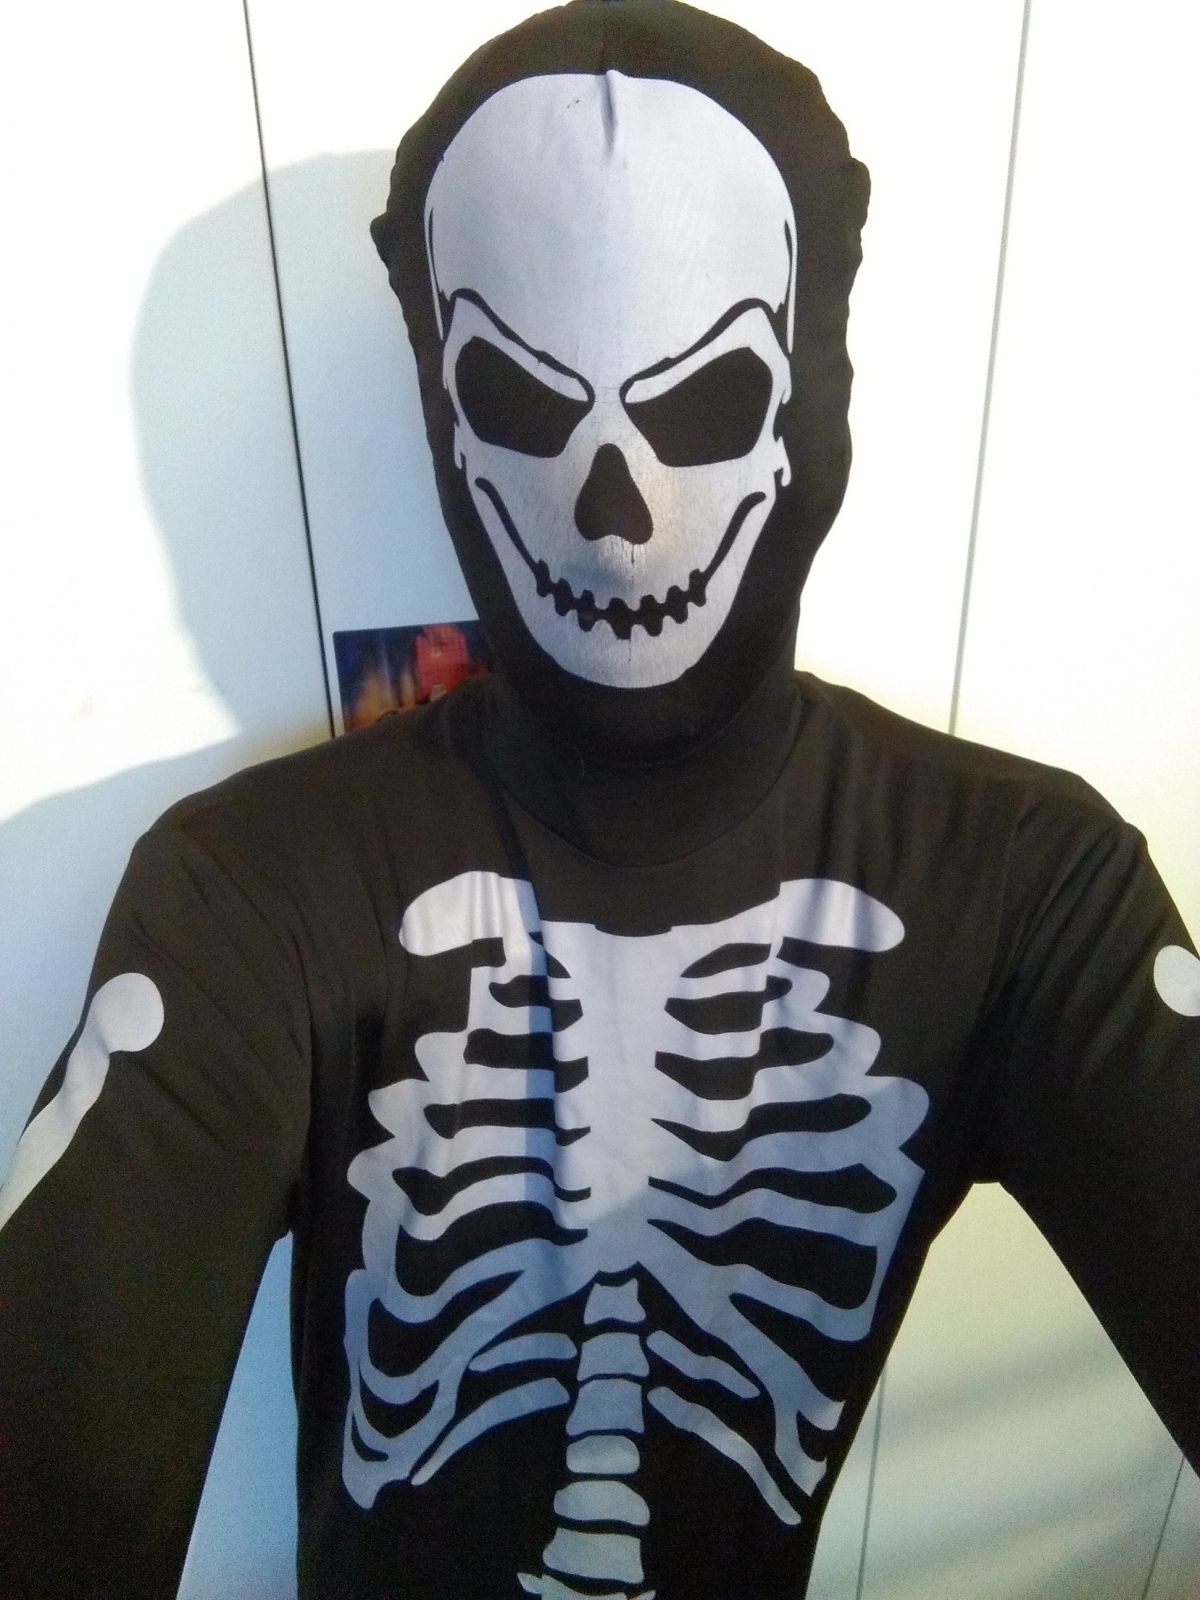 Zentai Squelette 1
Première photo en squelette
